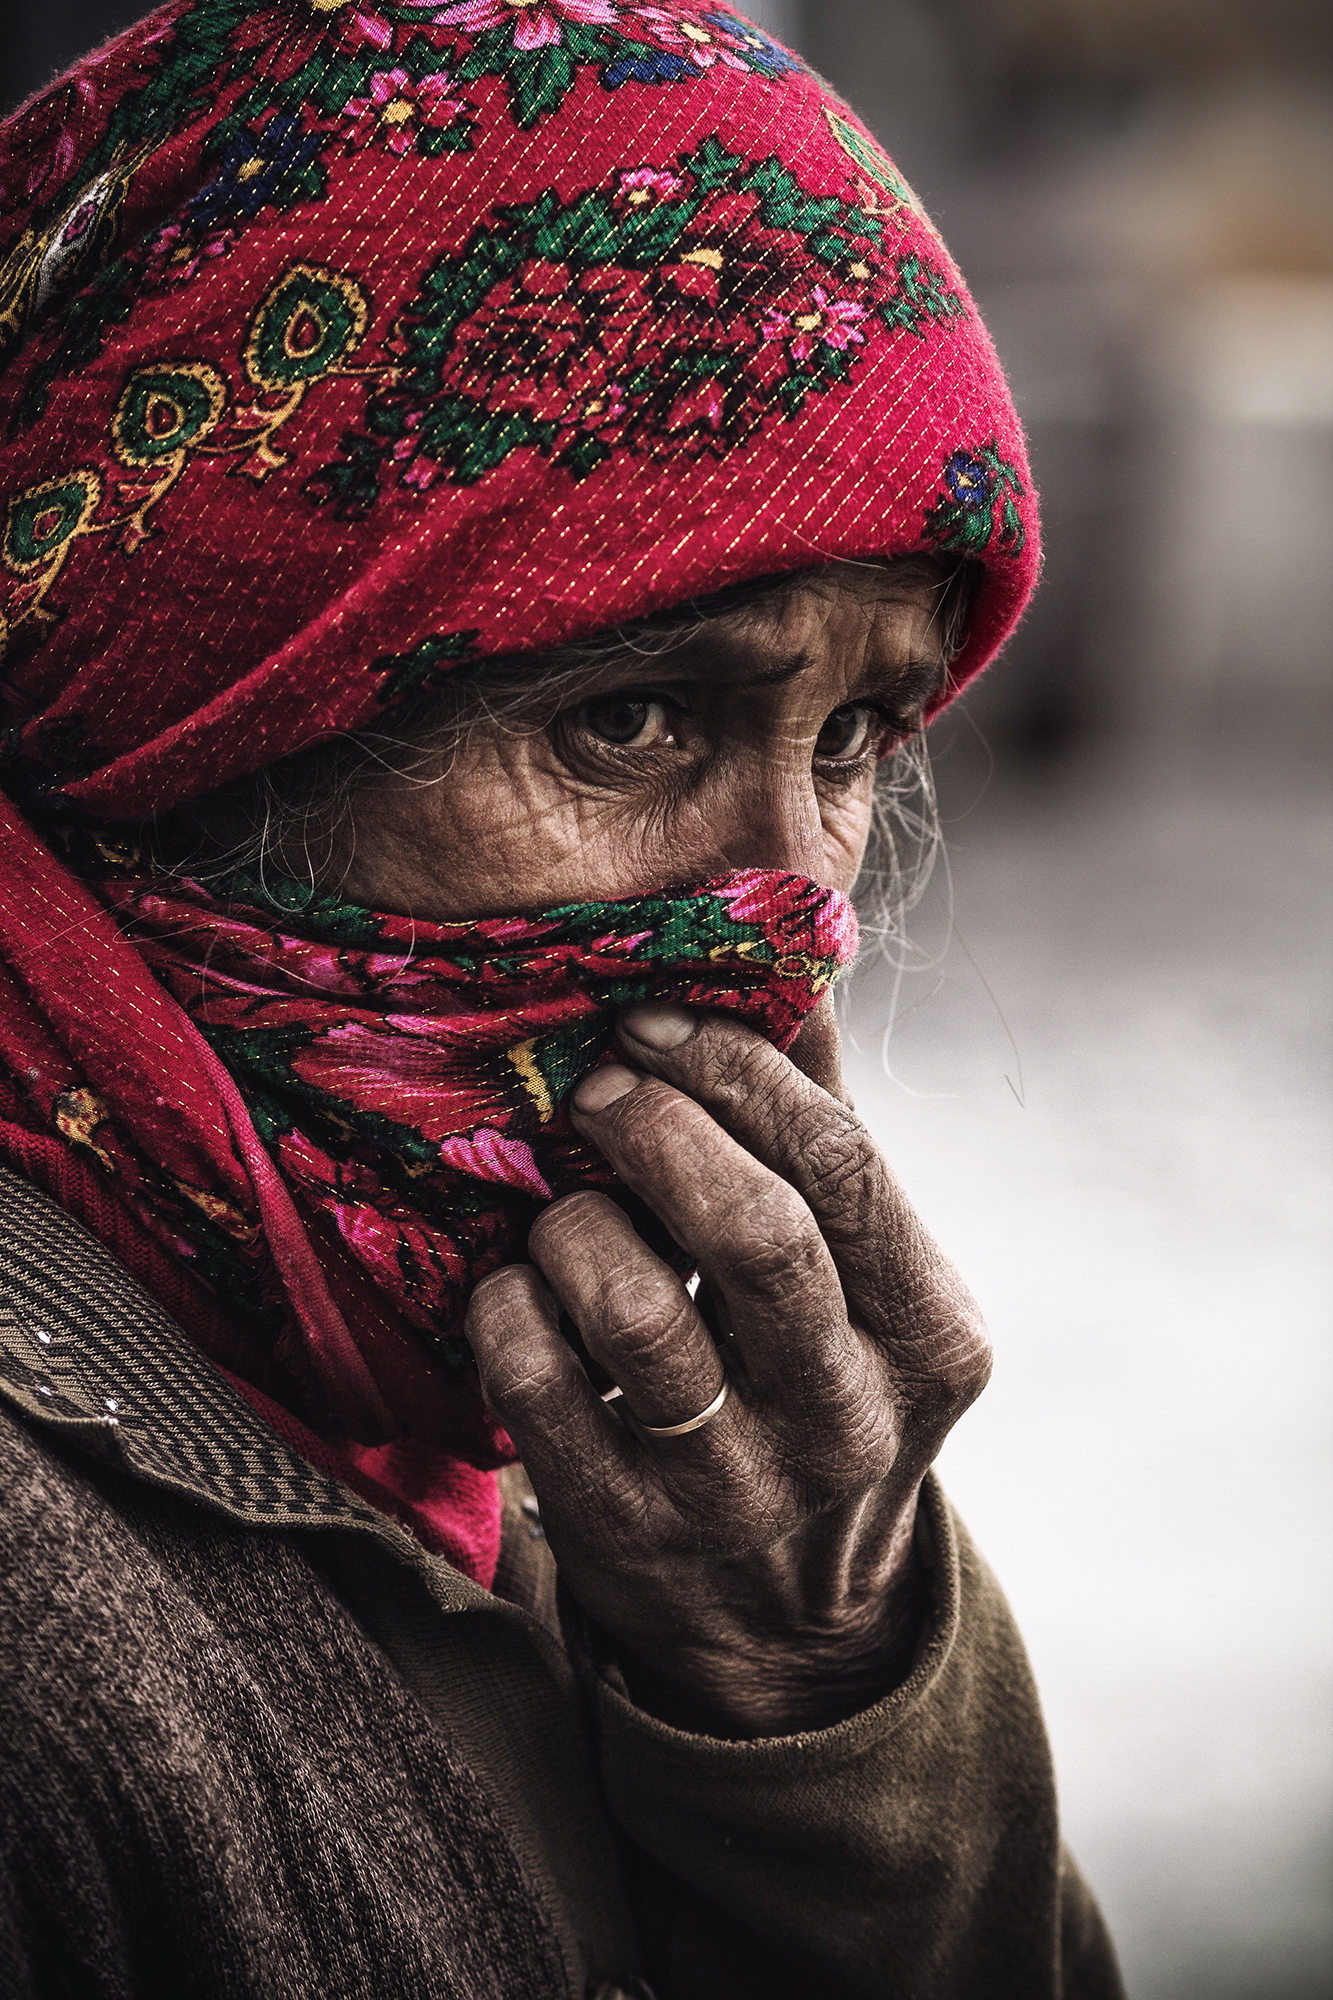 Il Tagikistan è uno dei Paesi più poveri dell’Asia centrale. Ogni anno la disoccupazione spinge molte persone a trasferirsi in Russia alla ricerca di lavoro, per guadagnare soldi che poi inviano alle proprie famiglie. Si calcola che oggi almeno un milione e mezzo di tagiki vivono e lavorano in Russia. Si tratta perlopiù di uomini, che lasciano la propria casa per svolgere in Russia lavori umili e spesso pericolosi. E così la loro patria si è trasformata in un Paese di sole donne, che si prendono cura di tutto: della casa, dei figli, dei genitori anziani. Questo progetto fotografico cerca di raccontare la vita delle donne che in patria attendono il ritorno dei propri mariti // Adila vive in una famiglia numerosa, ha un marito e tre figli, che non vede da oltre due anni: ormai gli uomini della sua famiglia lavorano a Omsk, in Russia, e non riescono a tornare a casa perché il loro datore di lavoro si è impossessato dei loro passaporti, non permettendogli così di poter tornare in patria